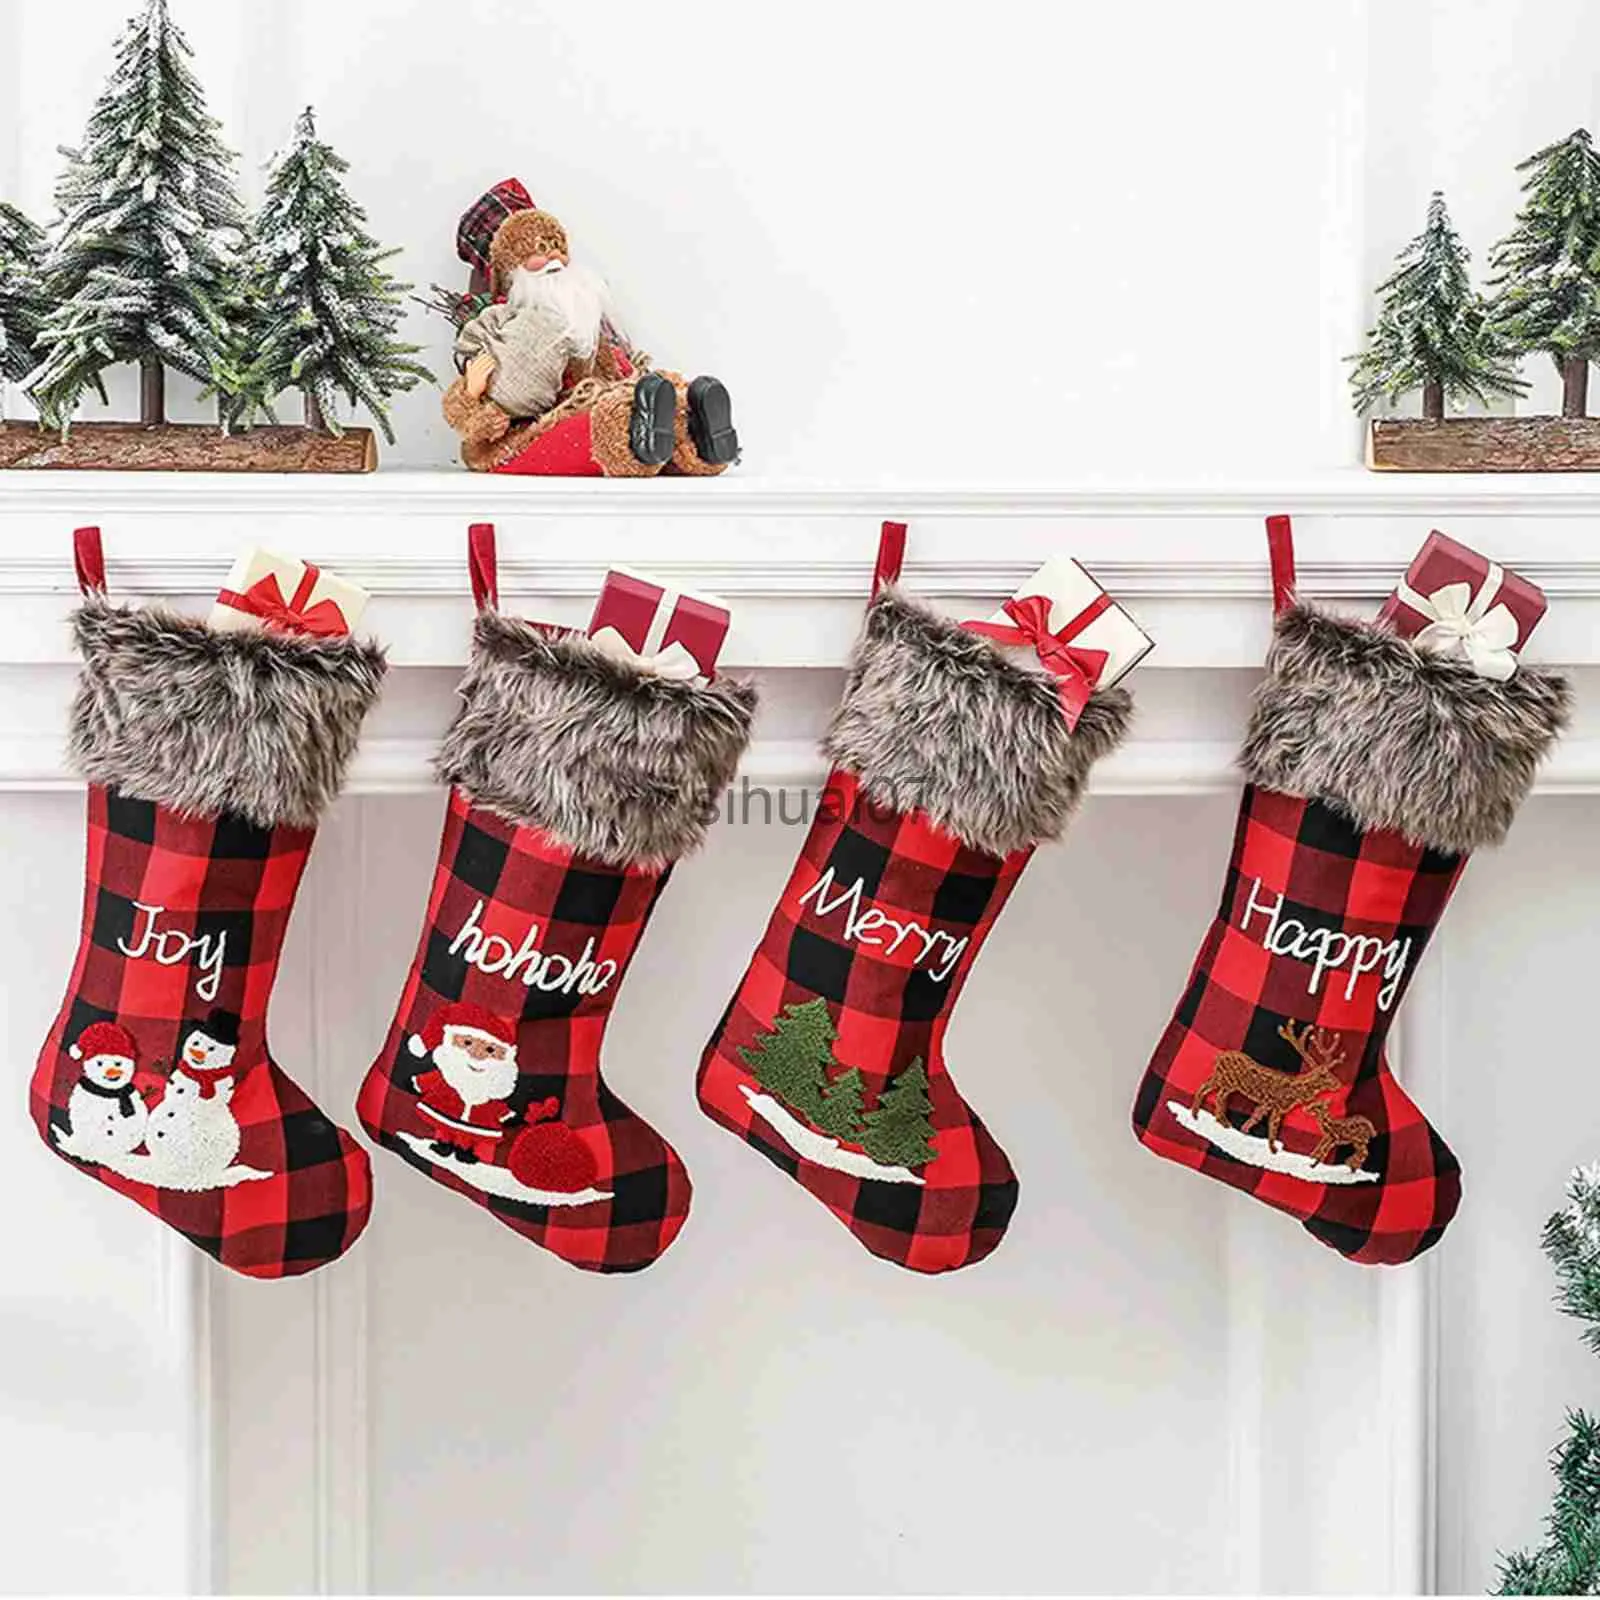 クリスマスの装飾クリスマス装飾レッドチェック柄のクリスマスソックス暖炉ハンギング装飾品ストッキングXmasツリーペンダント新年キャンディギフトバッグx1020